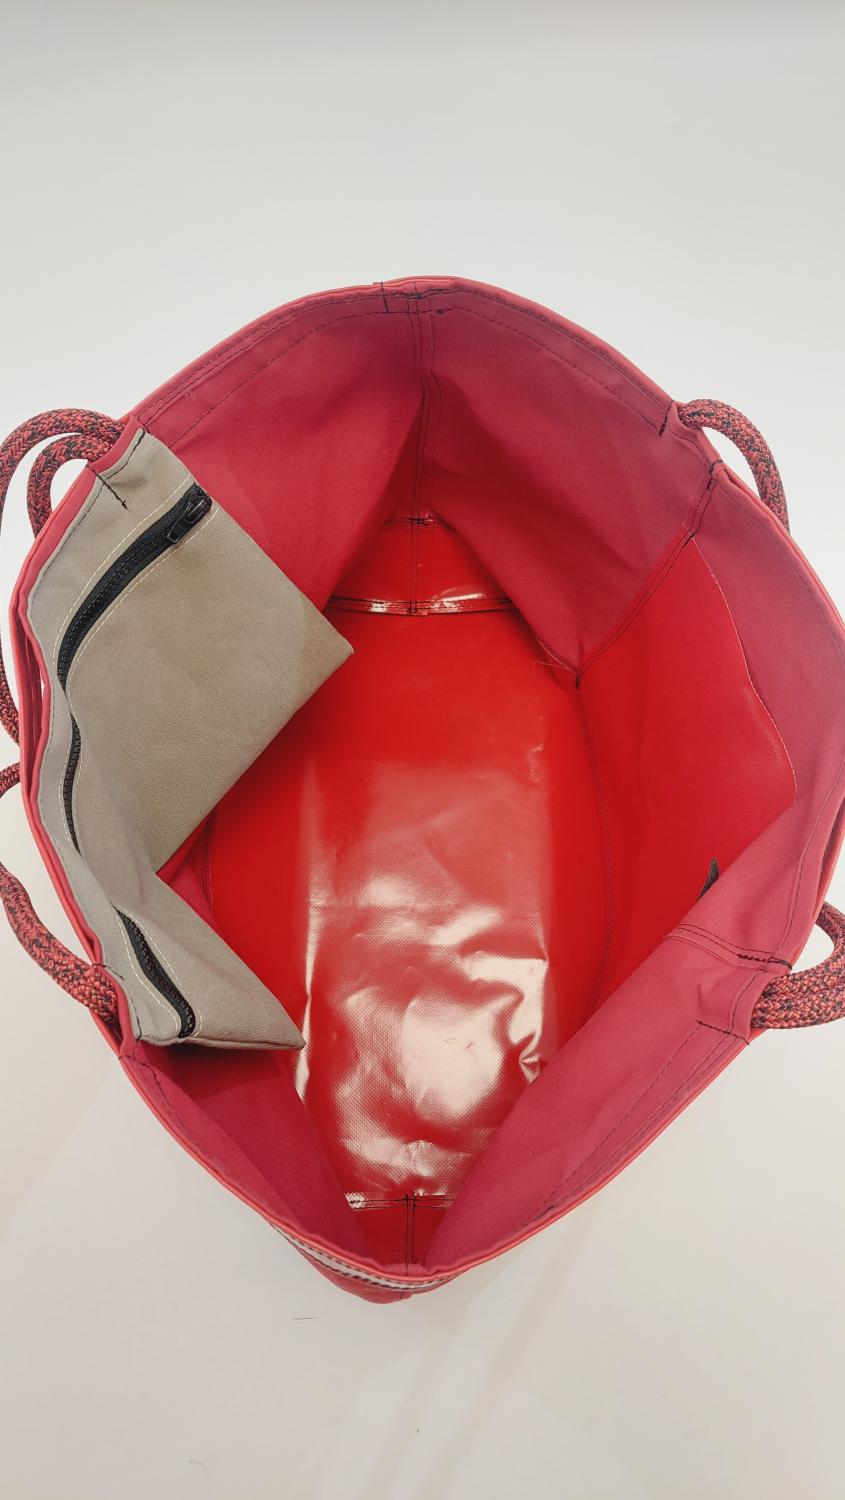 sacs et objets textiles recyclés en bretagne